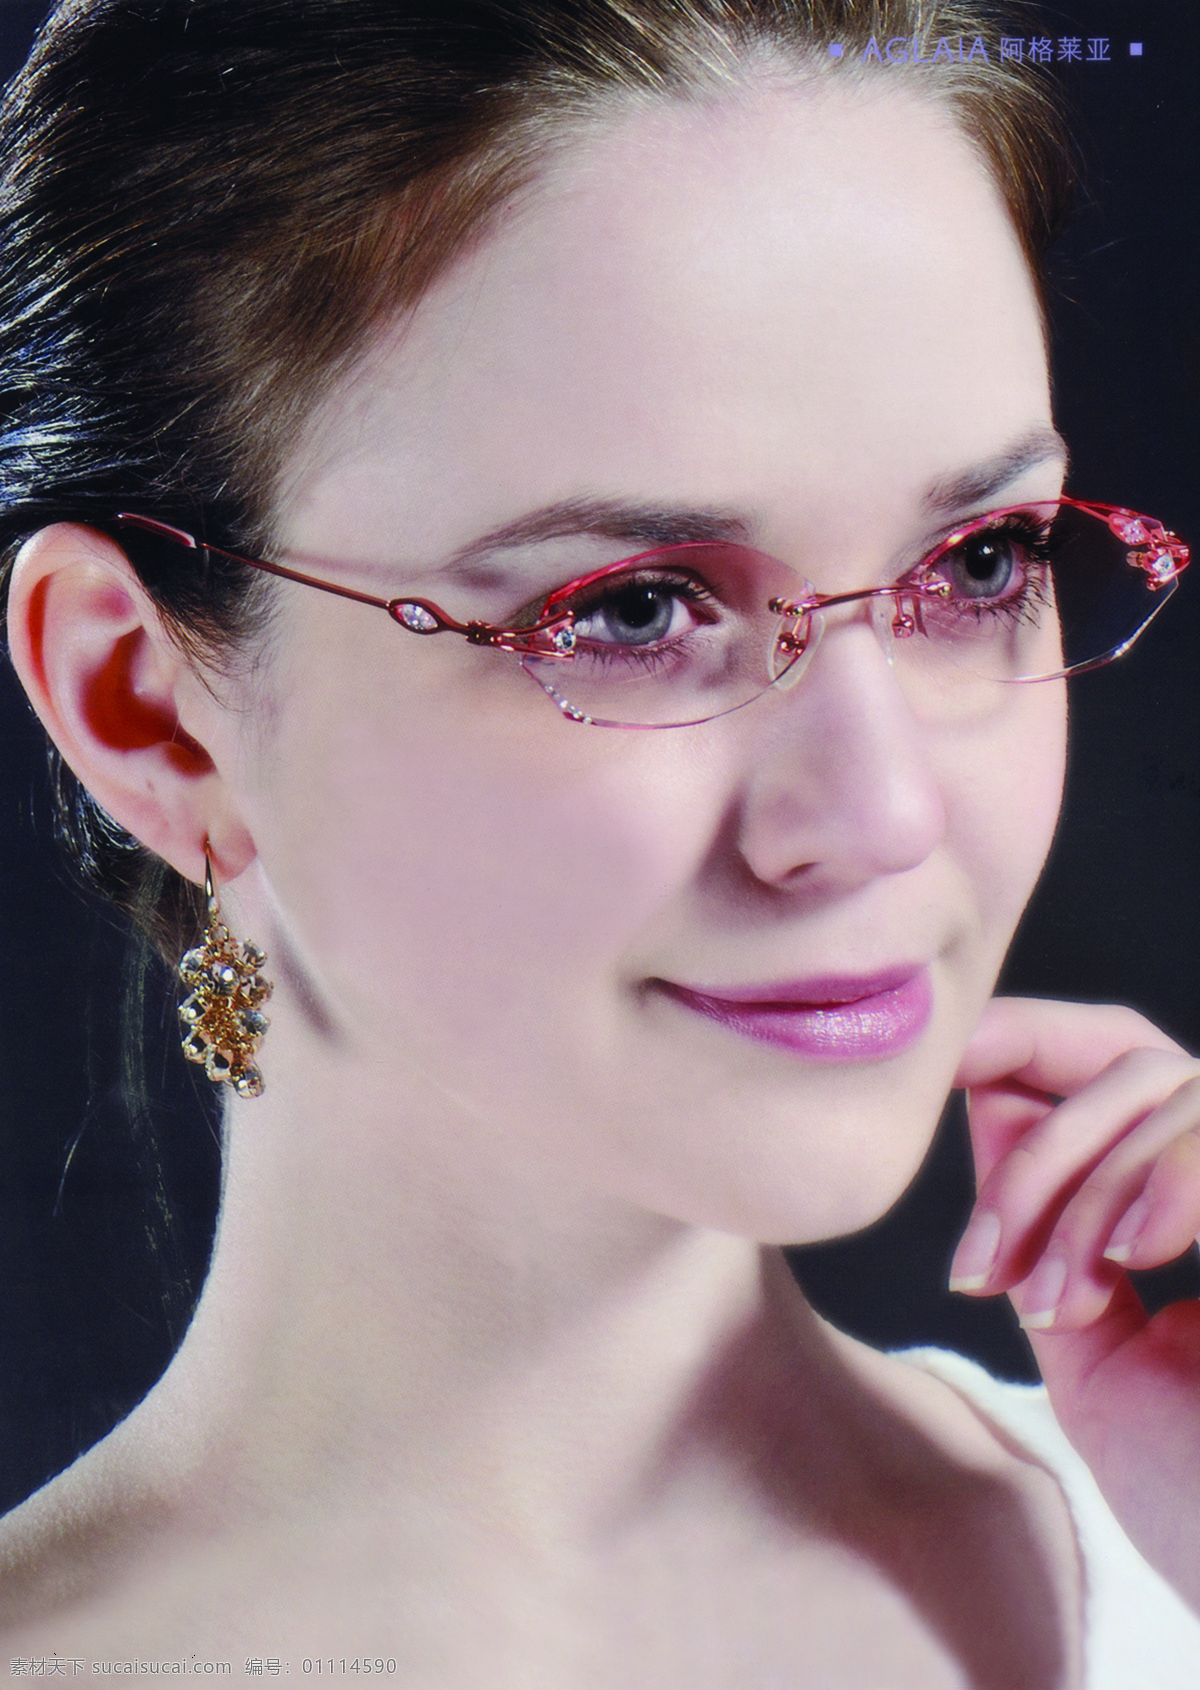 眼镜 广告 女人 眼镜广告 阿格莱亚 淘宝素材 其他淘宝素材